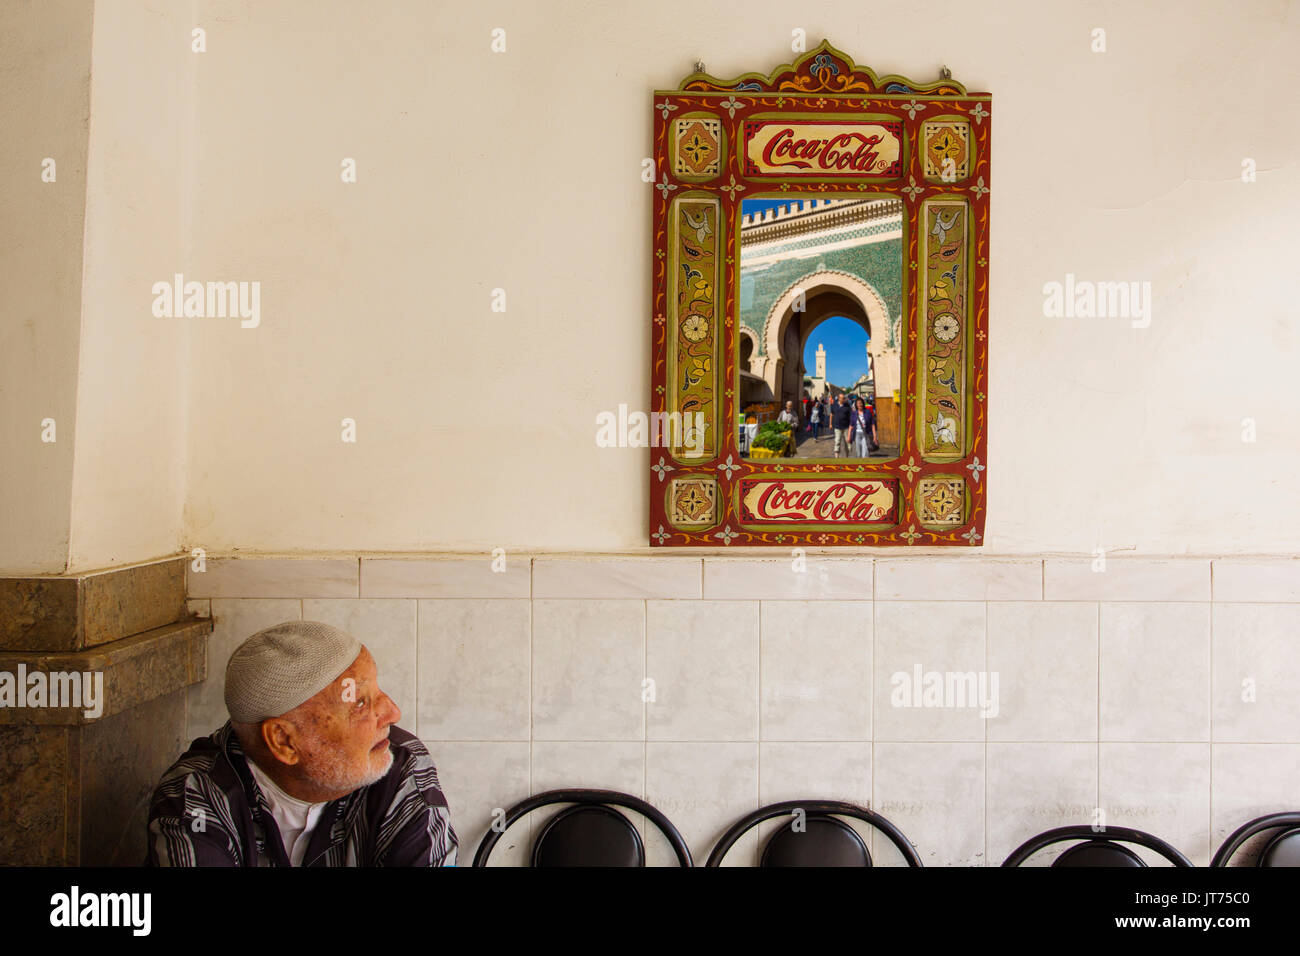 Das Leben auf der Straße. Bab Bou Jeloud Tor in einem Spiegel, Haupteingang Souk Medina von Fes, Fes el Bali wider. Marokko, Maghreb Nordafrika Stockfoto